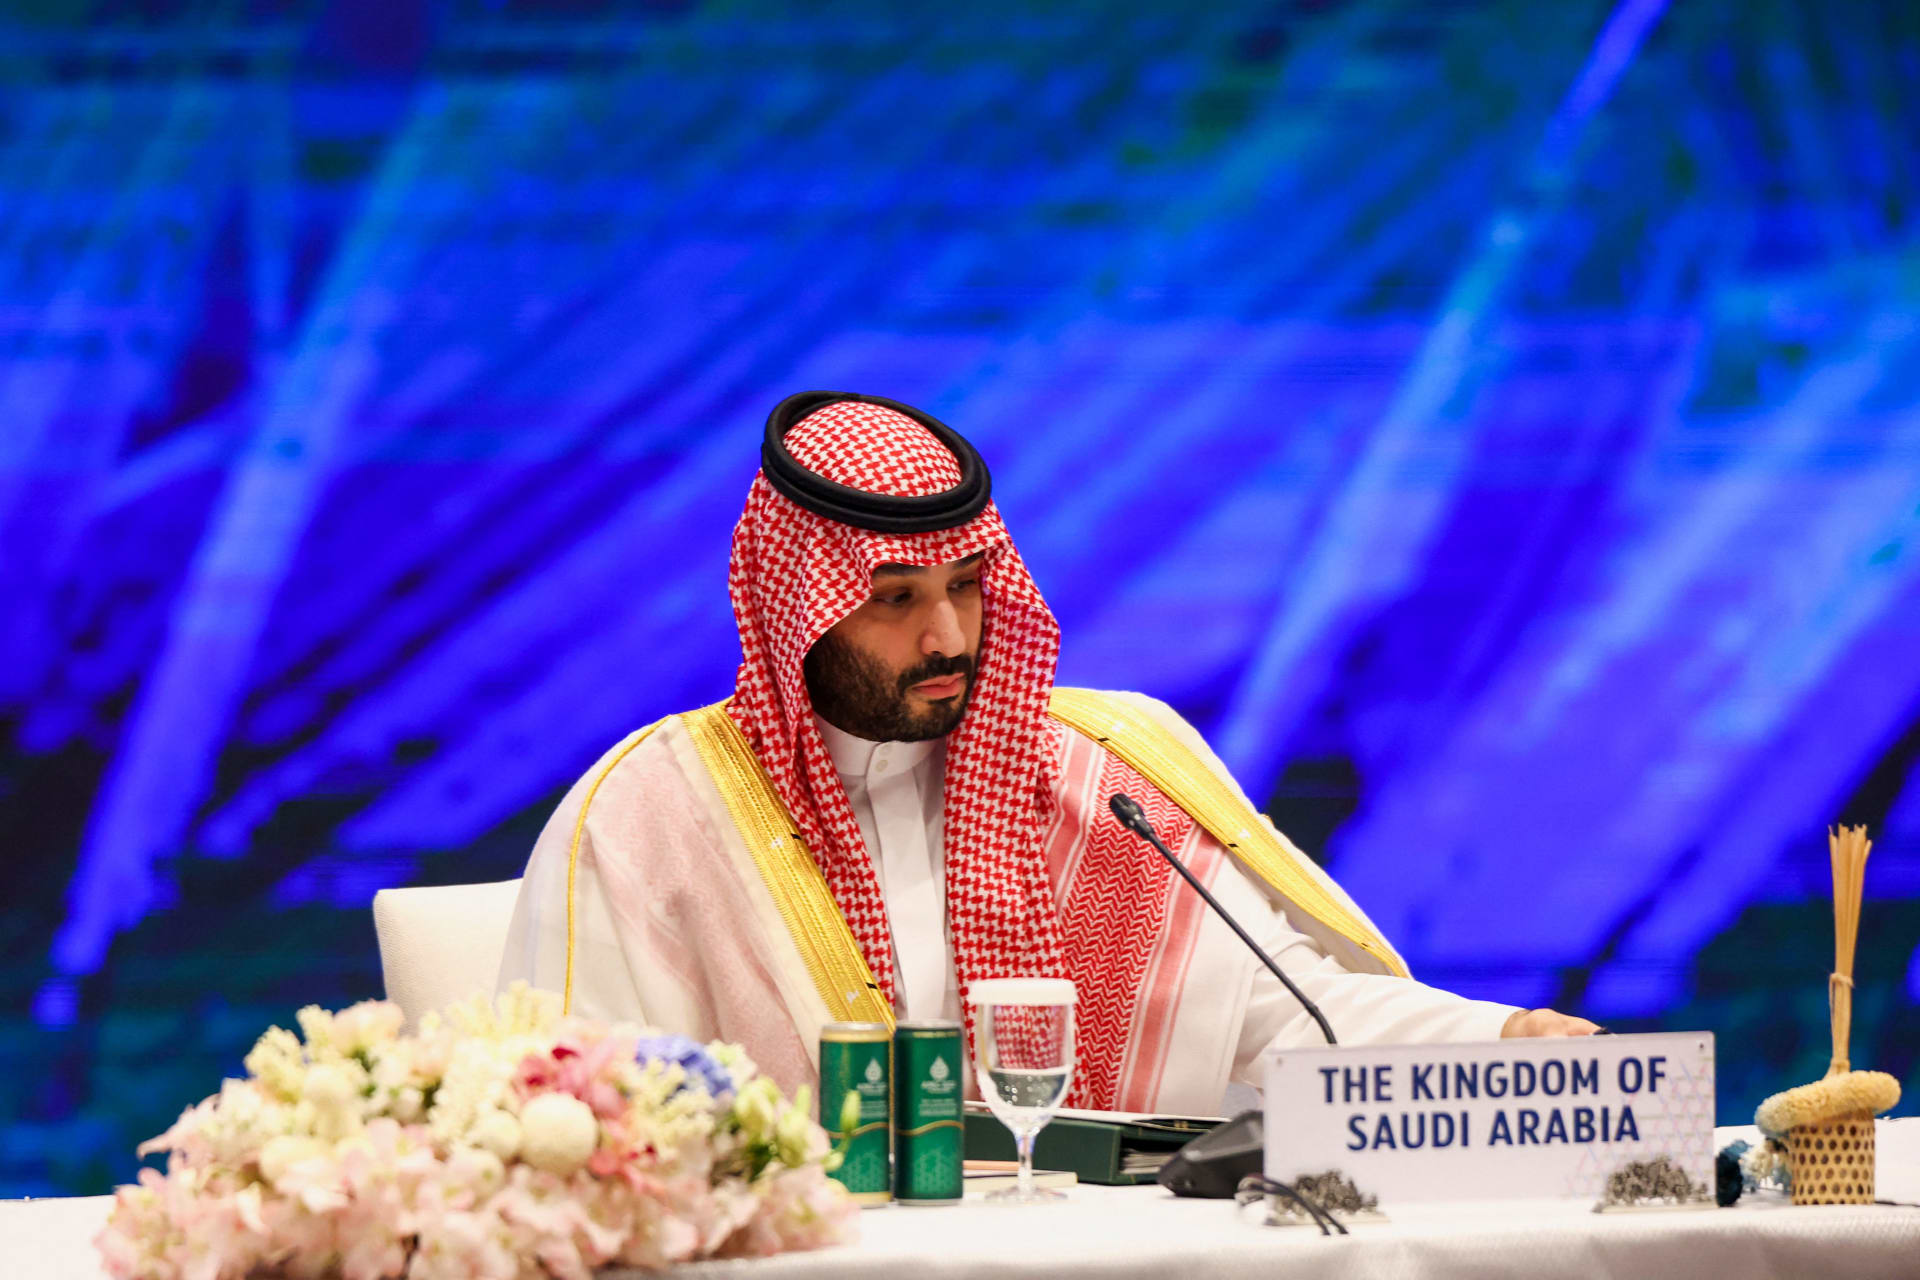 محمد بن سلمان يعلن تأسيس شركة "طيران الرياض".. ما أهميتها للاقتصاد السعودي؟